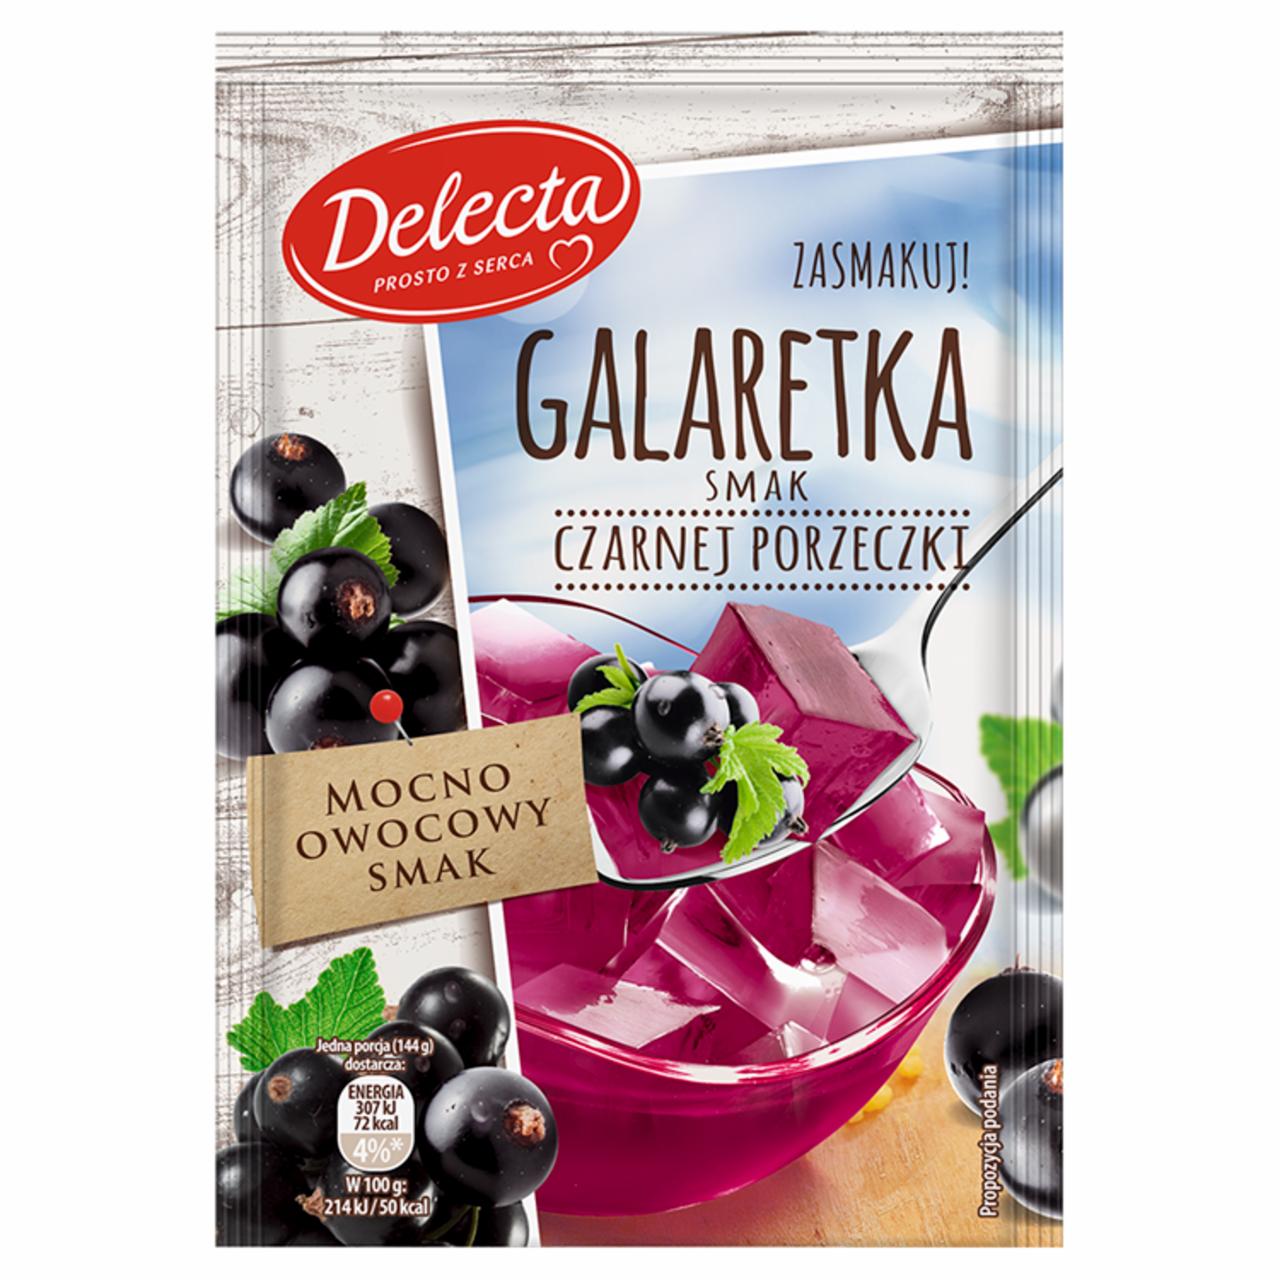 Zdjęcia - Delecta Galaretka smak czarnej porzeczki 75 g